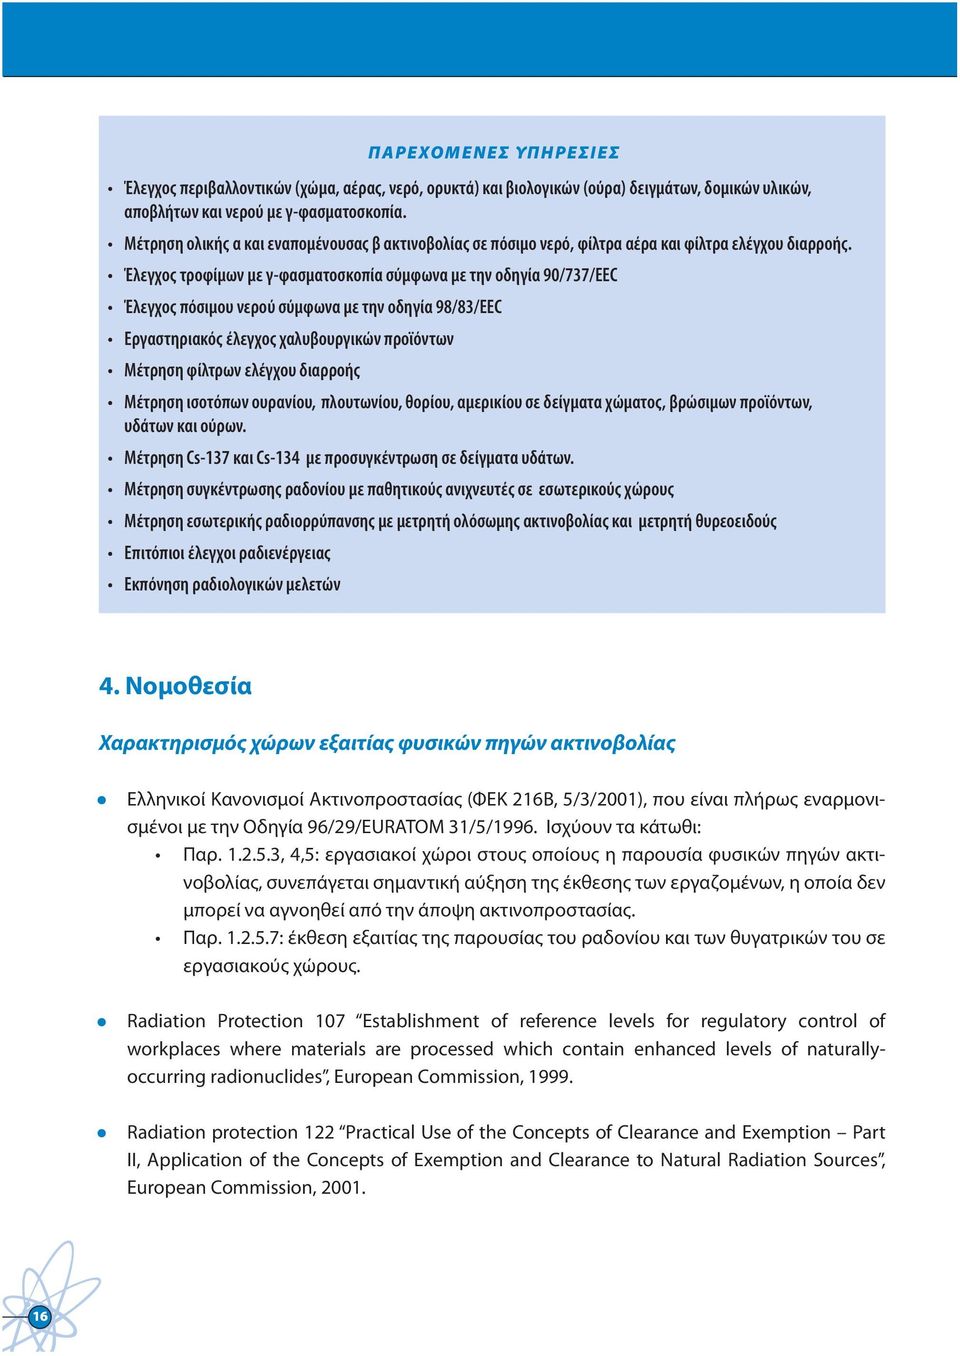 Έλεγχος τροφίμων με γ-φασματοσκοπία σύμφωνα με την οδηγία 90/737/ΕΕC Έλεγχος πόσιμου νερού σύμφωνα με την οδηγία 98/83/ΕΕC Εργαστηριακός έλεγχος χαλυβουργικών προϊόντων Μέτρηση φίλτρων ελέγχου